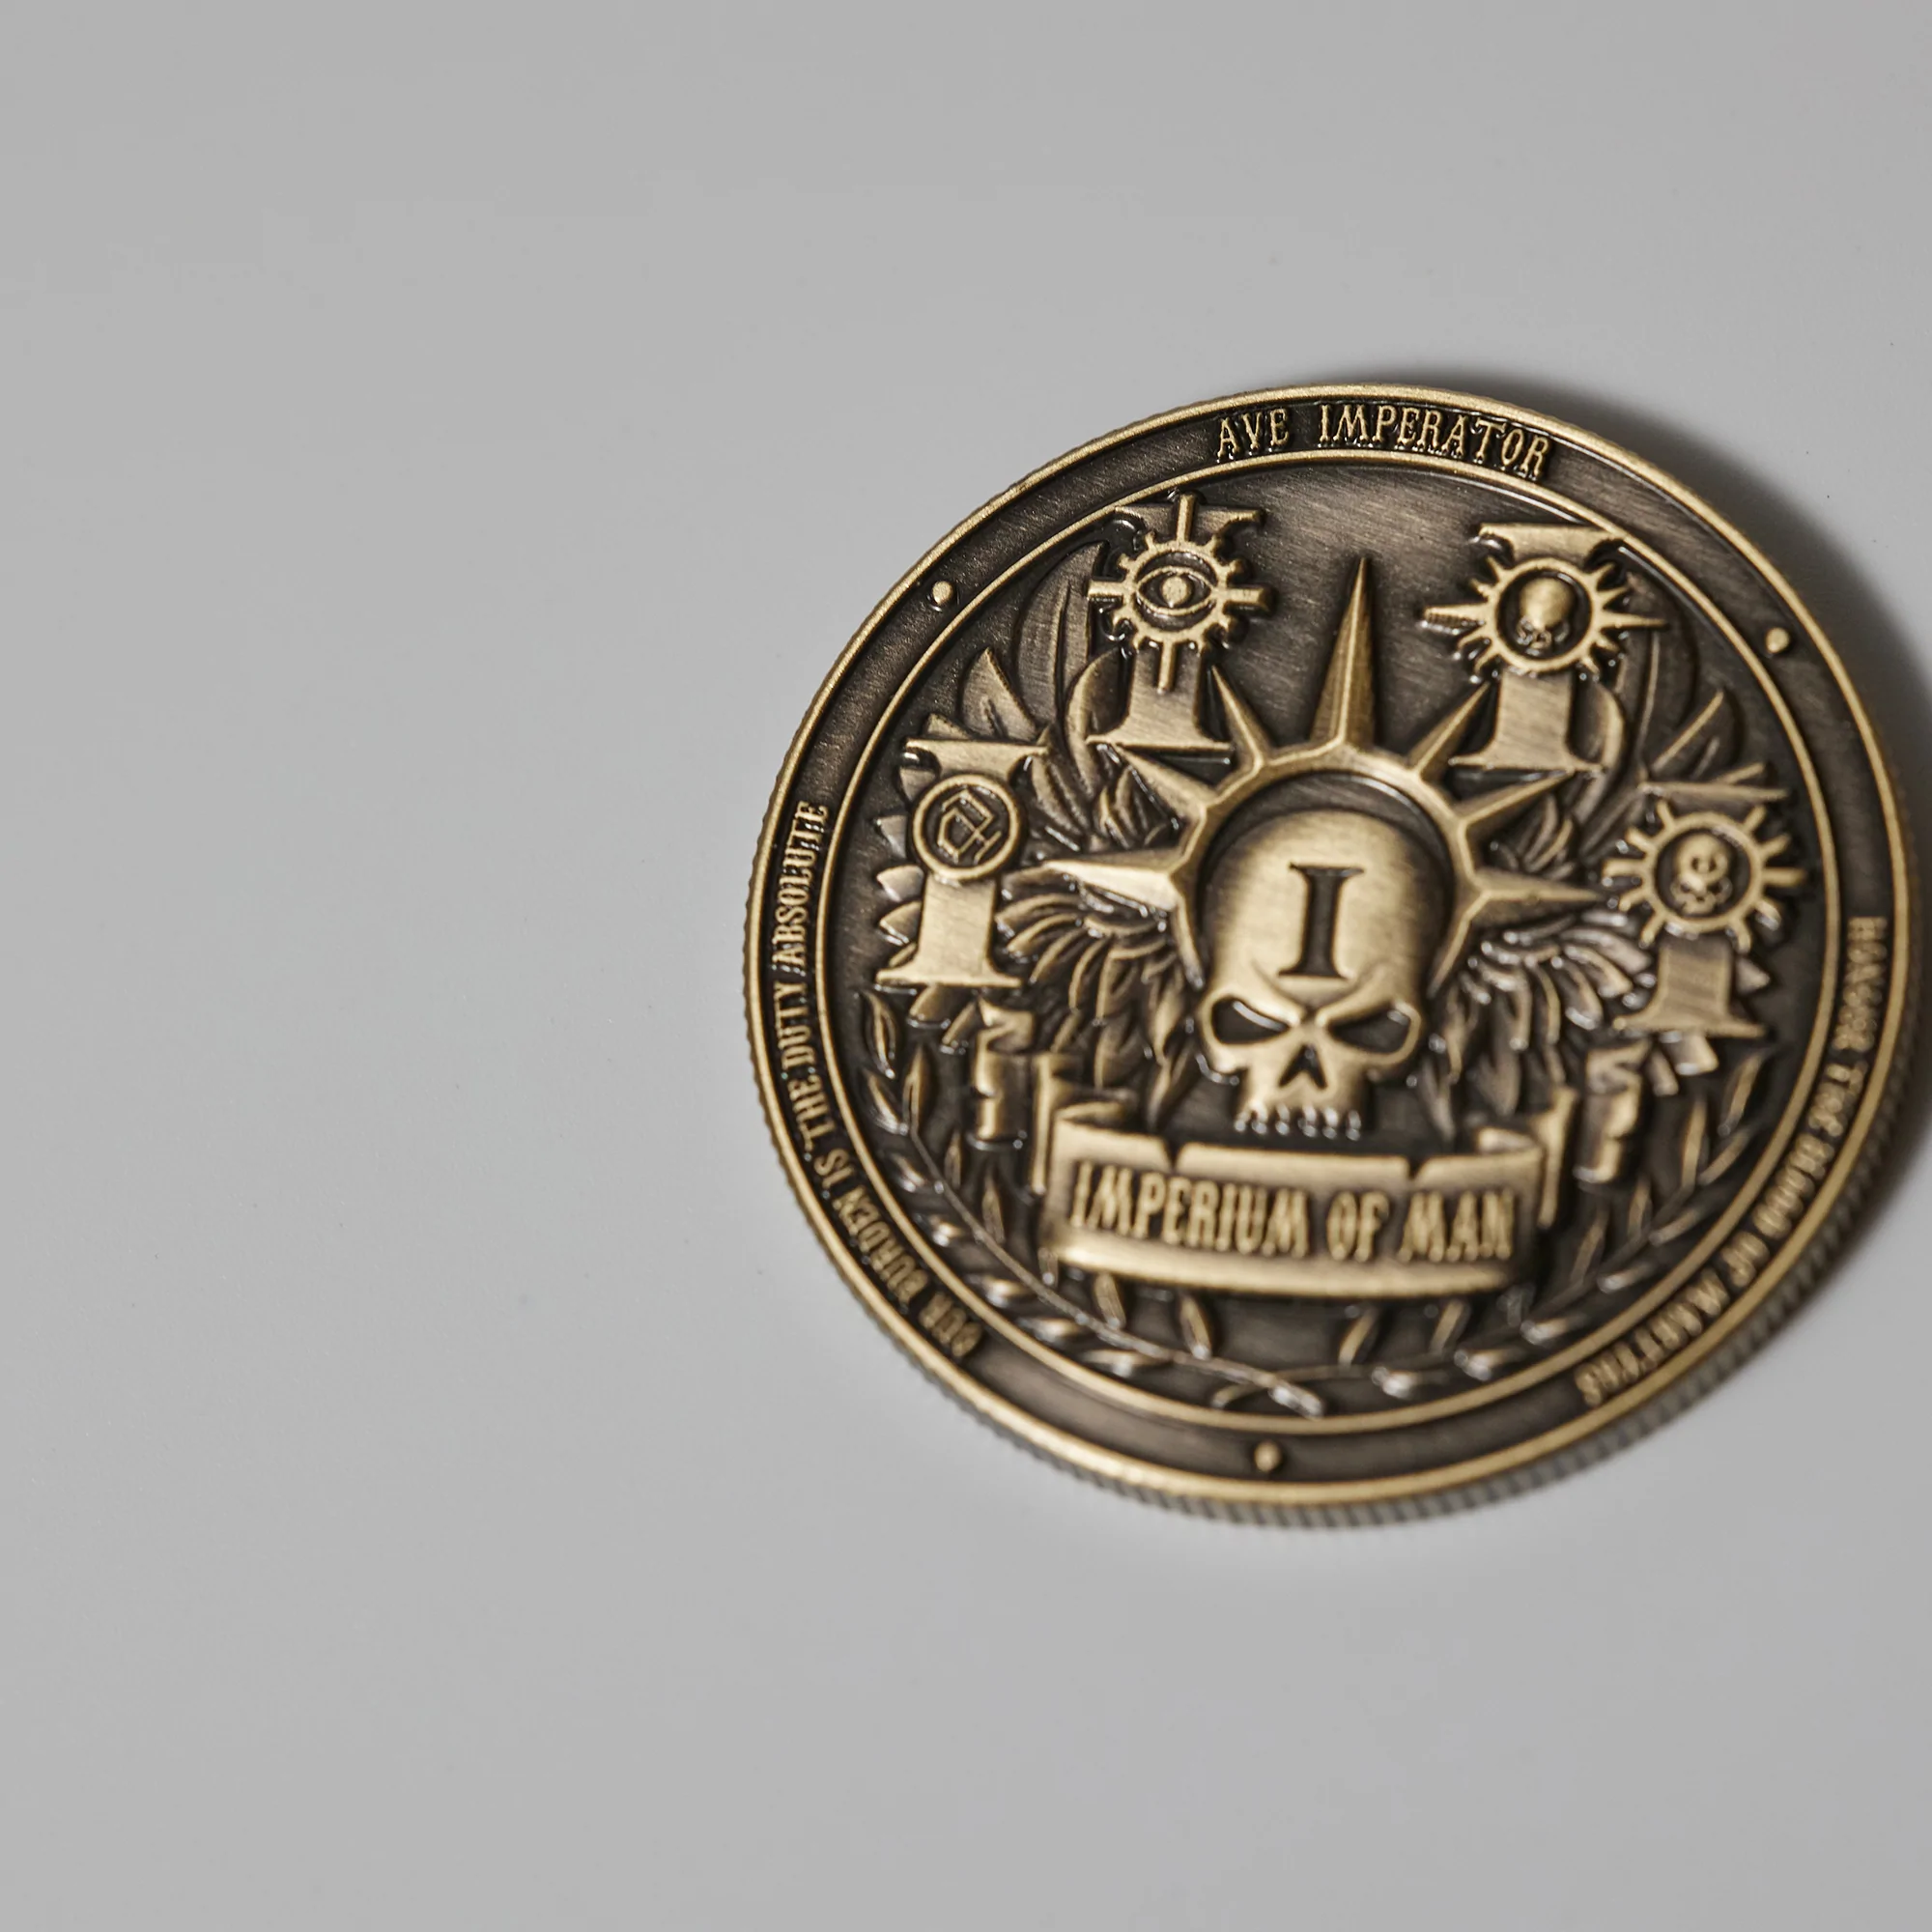 Collectible Coin: Empire-1659975155.jpg